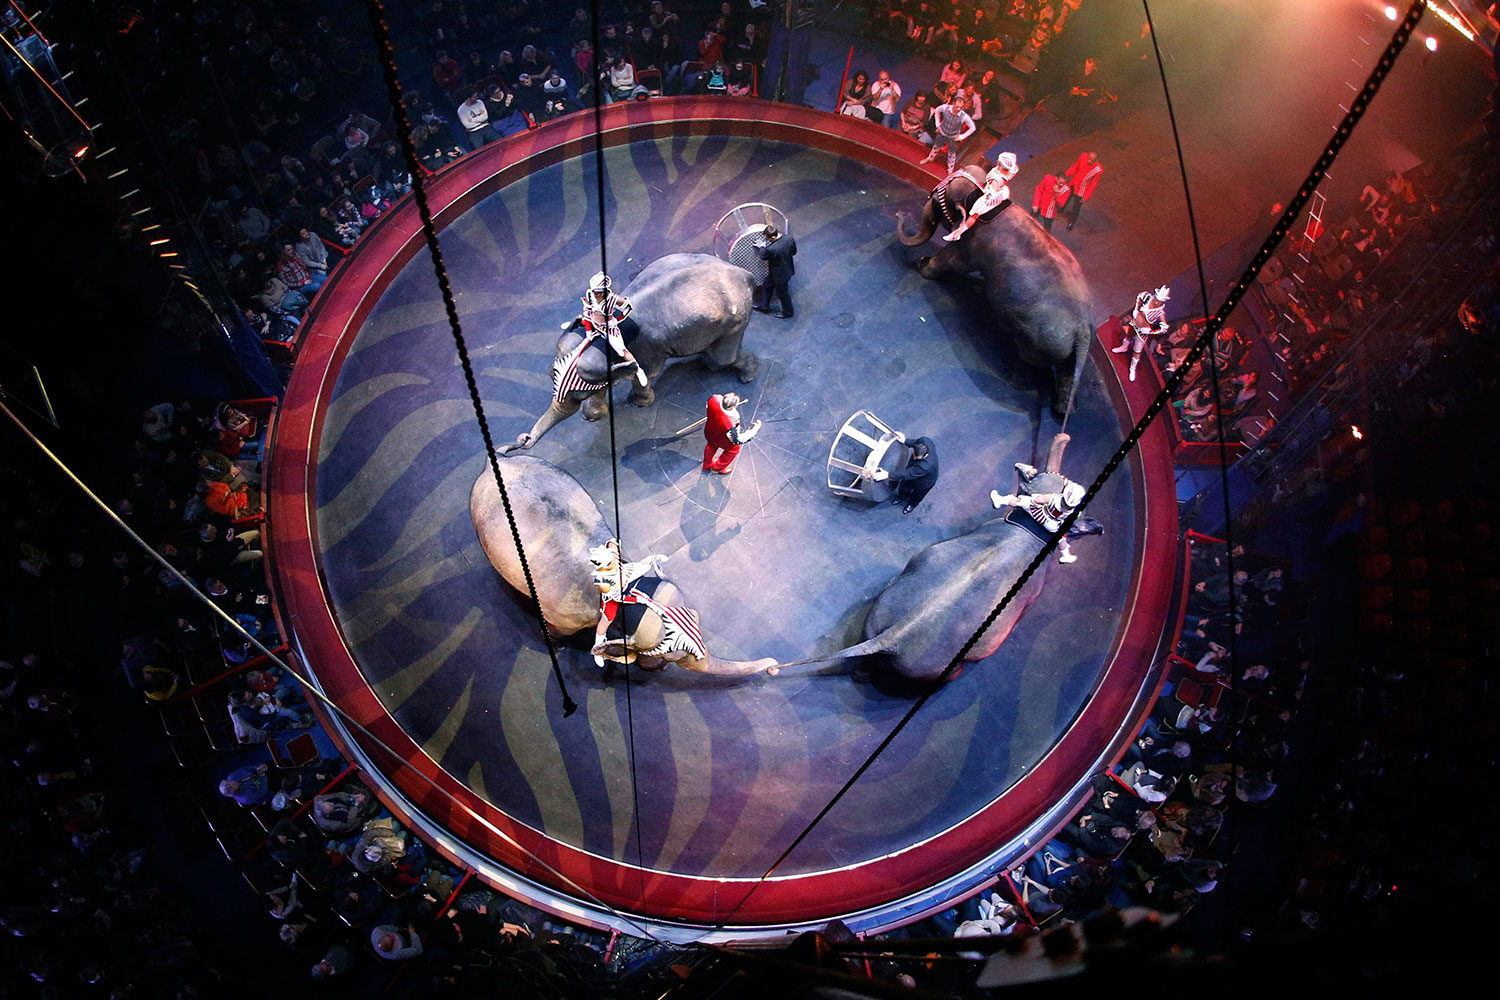 La familia del Circo Arlette Gruss celebra su 30º aniversario con el espectáculo "Historia"